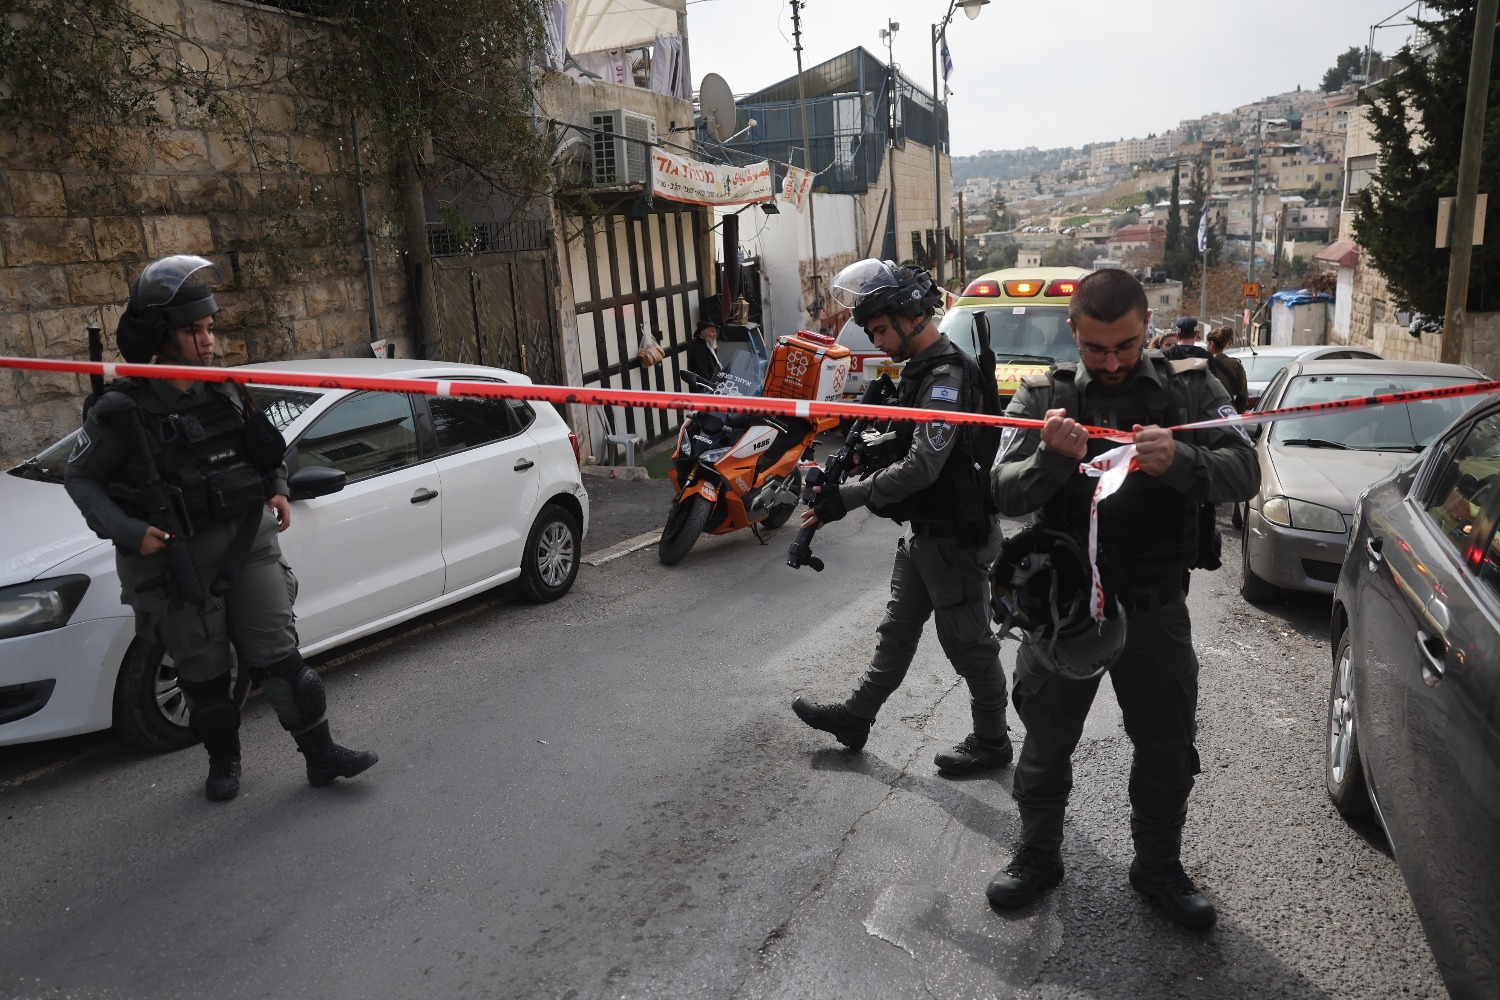  Теракт в Городе Давида совершил 13-летний подросток из Восточного Иерусалима 